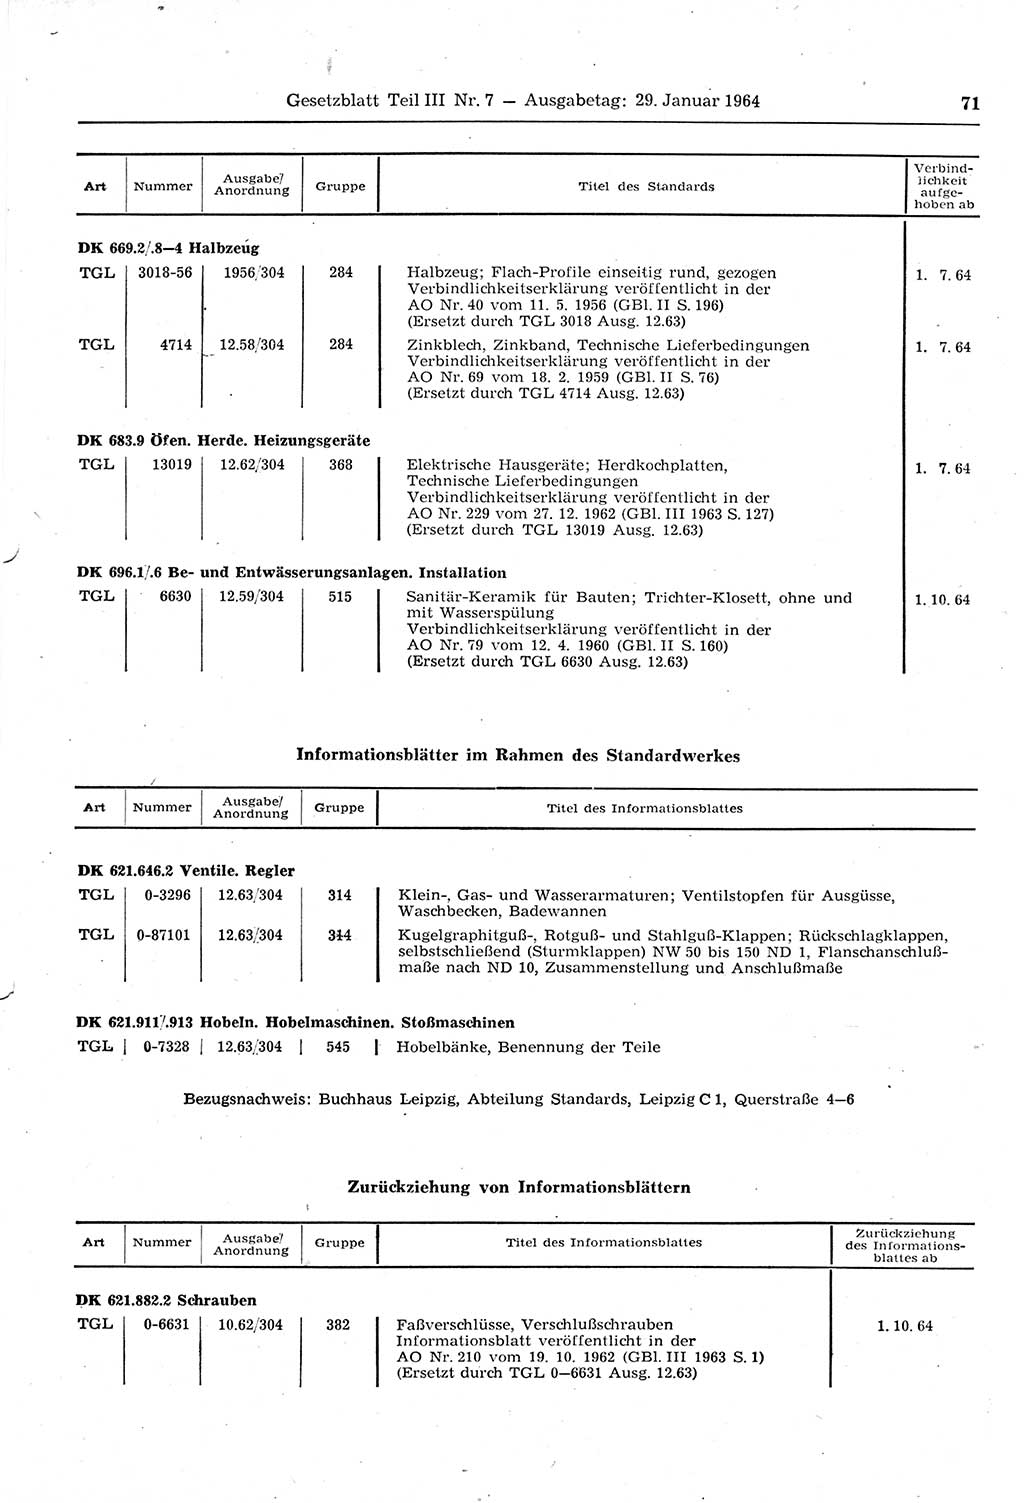 Gesetzblatt (GBl.) der Deutschen Demokratischen Republik (DDR) Teil ⅠⅠⅠ 1964, Seite 71 (GBl. DDR ⅠⅠⅠ 1964, S. 71)